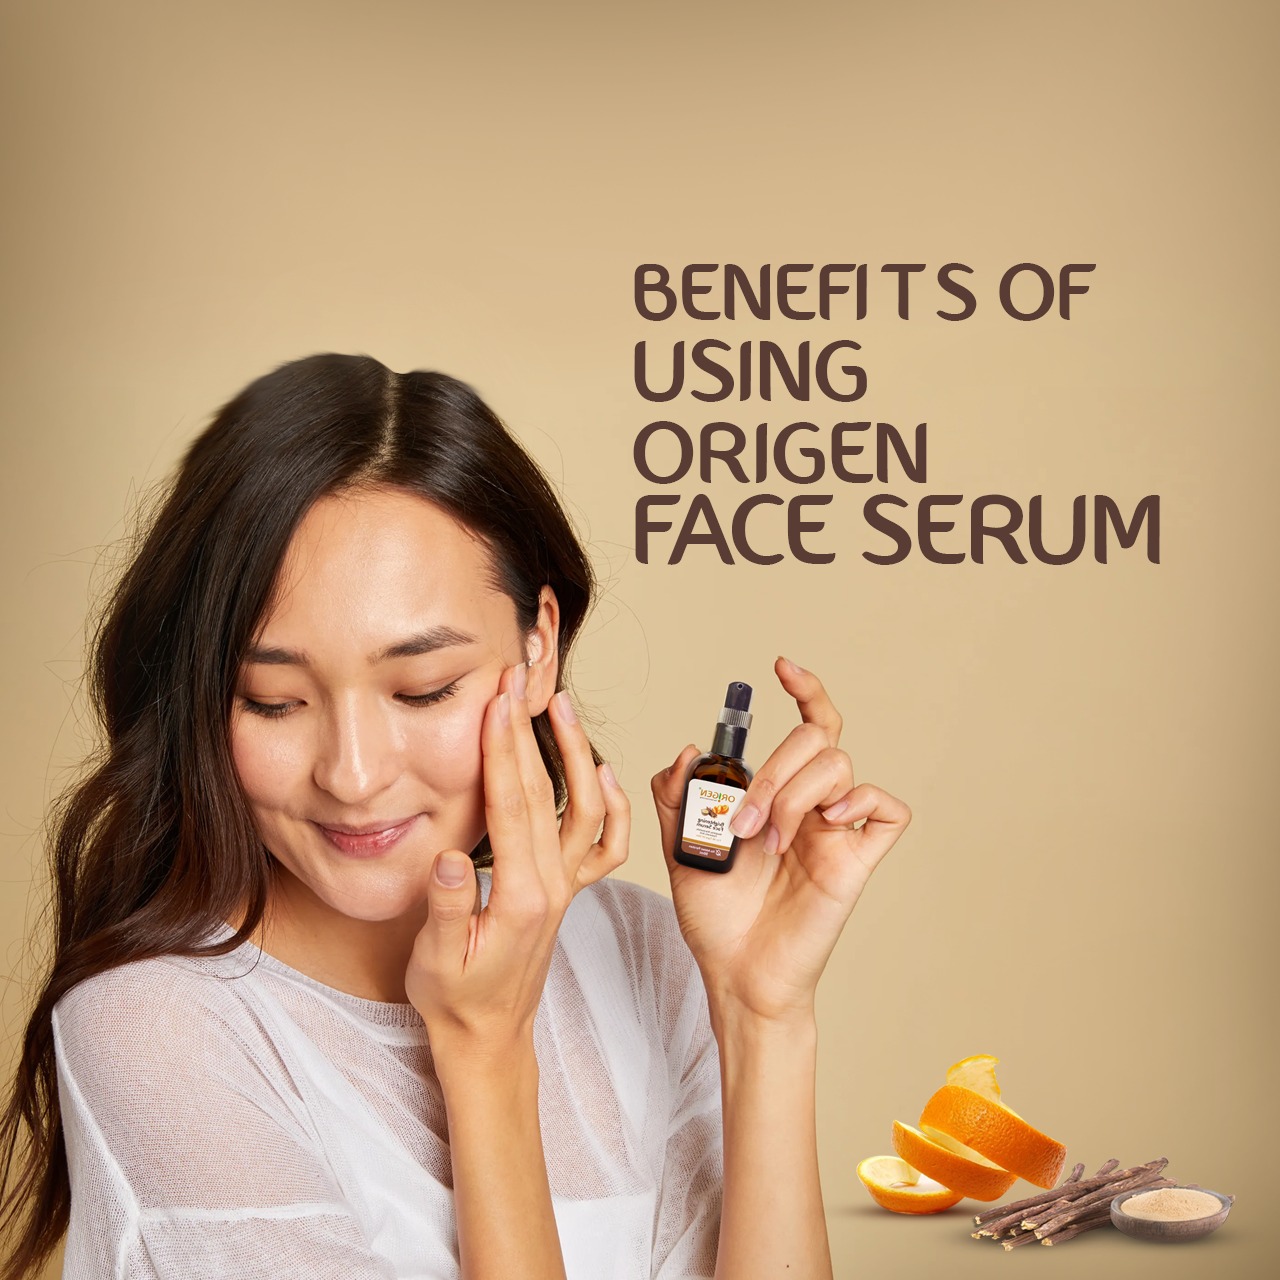 10 Benefits of Using Origen Face Serum